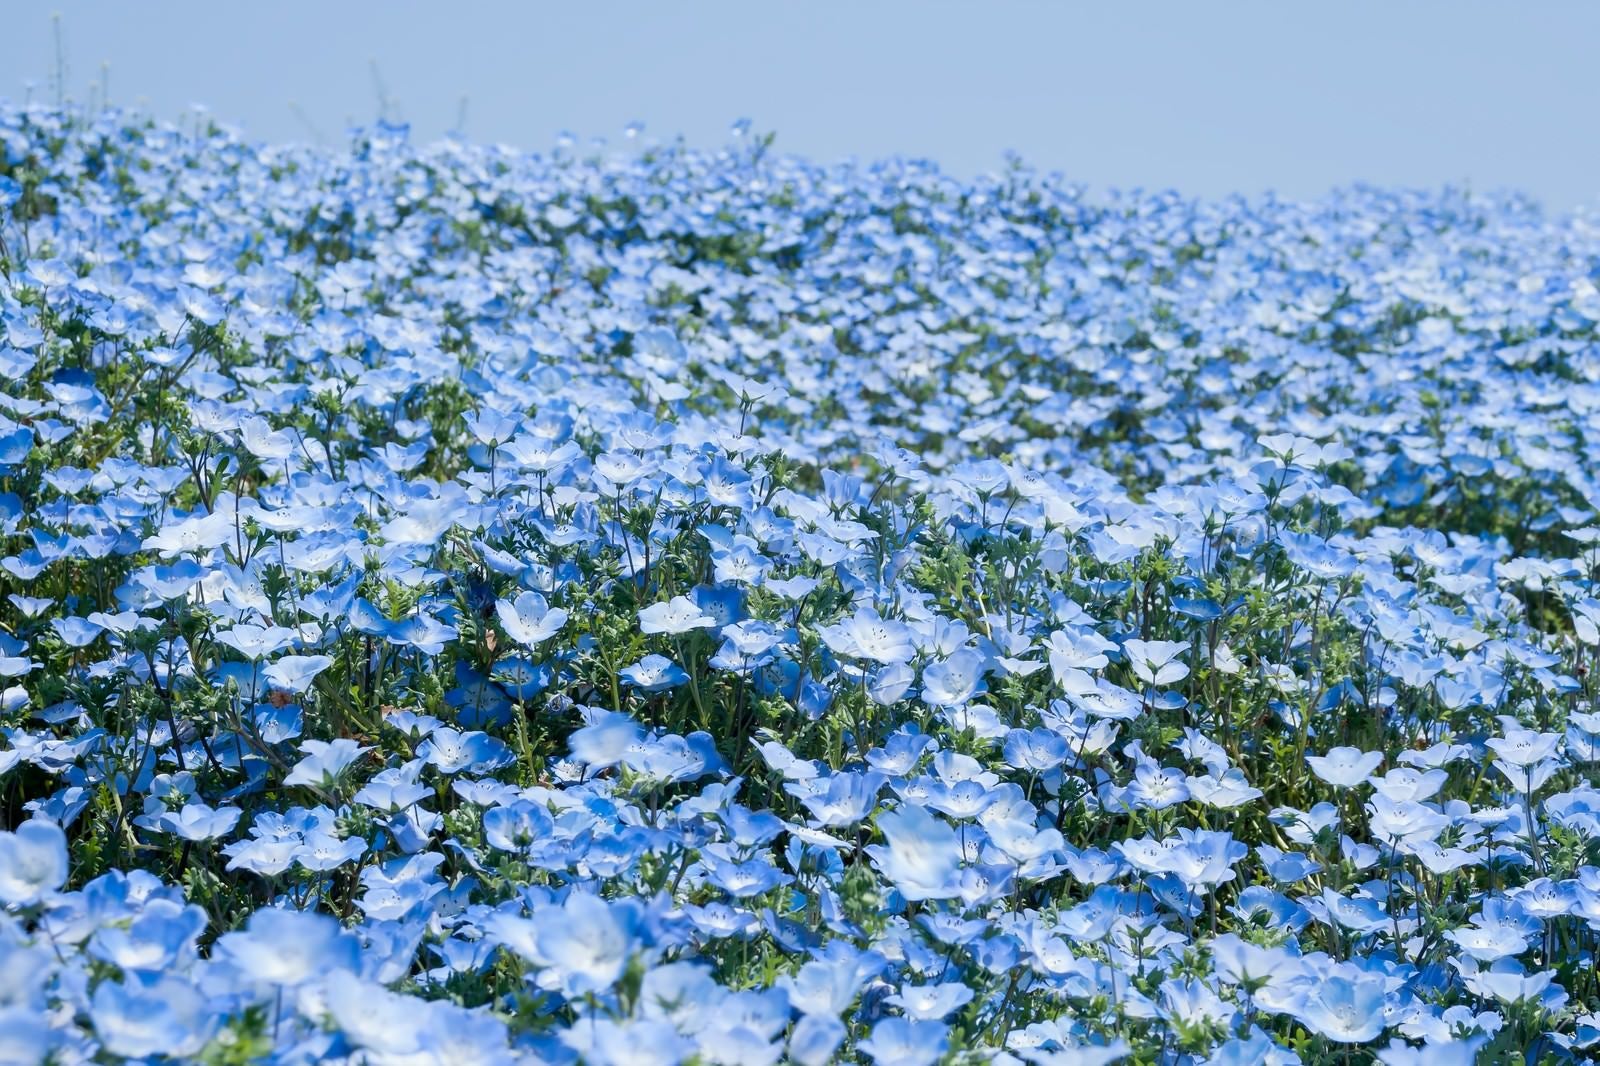 「広がる一面の青い花」の写真